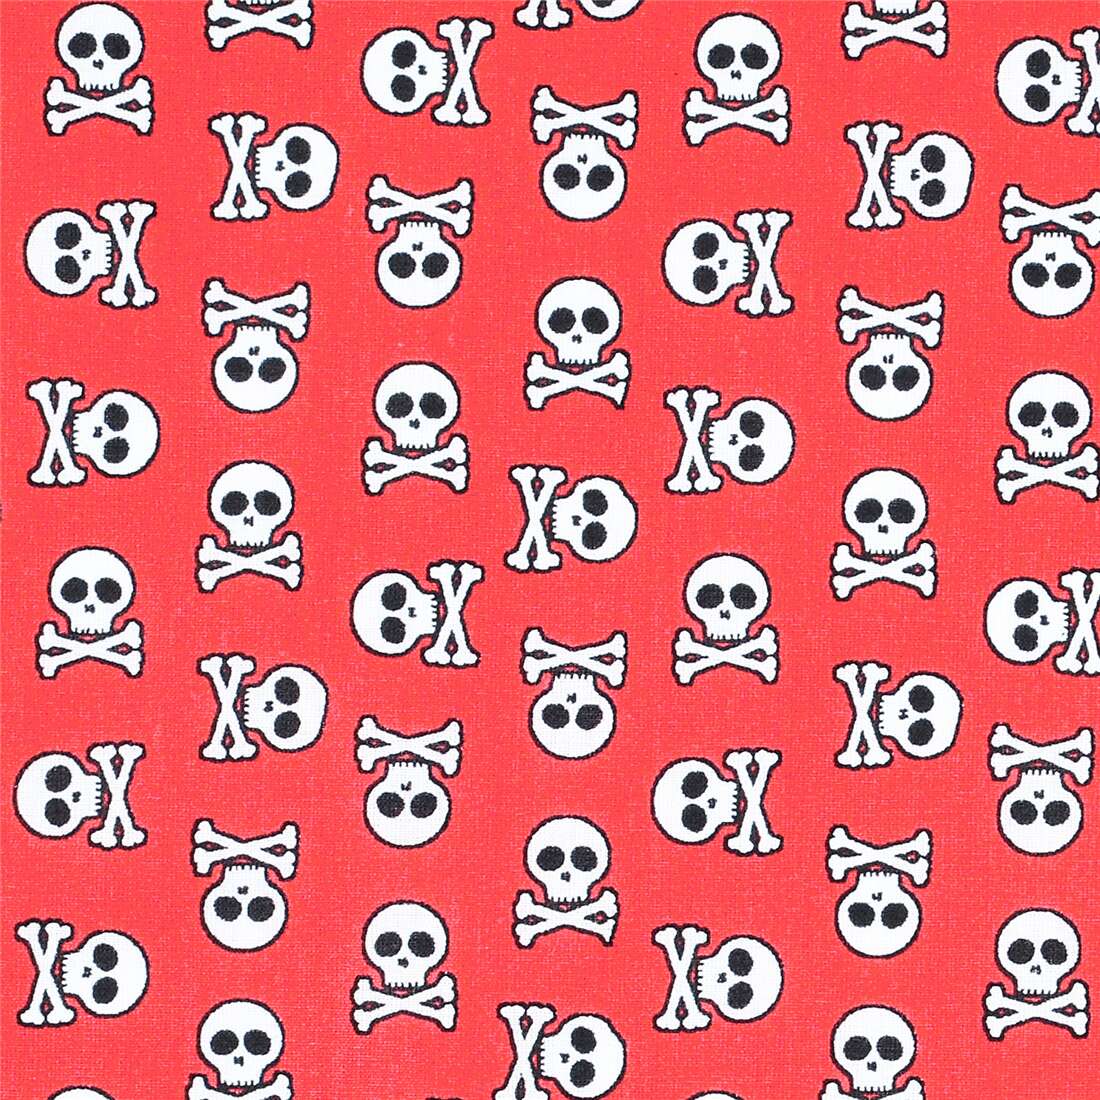 Skrøbelig skyld Elevator Pirate Skull Crossbones Fabric by Stof France - modeS4u